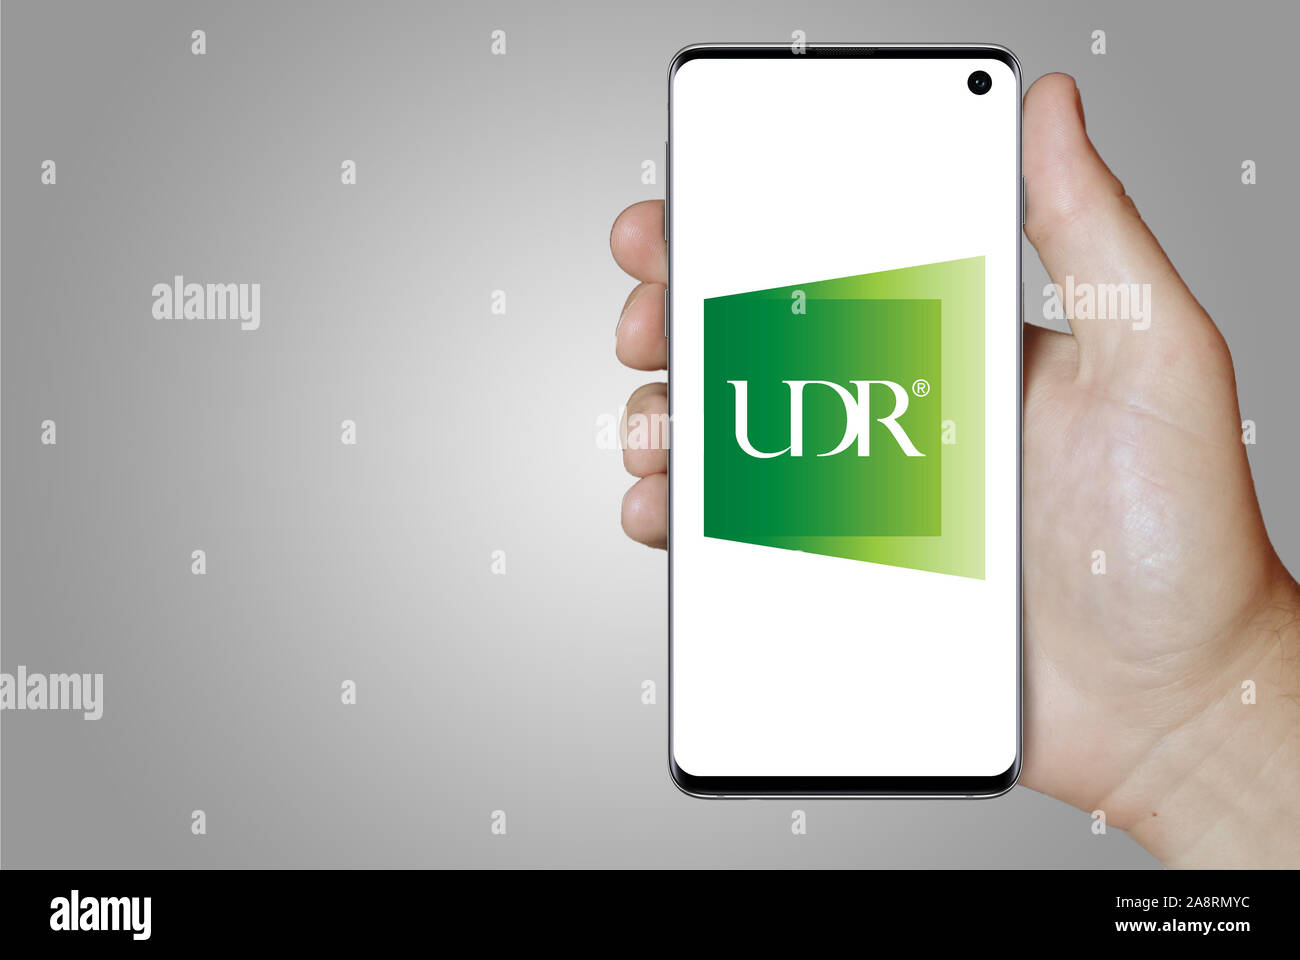 Logo de compagnie publique UDR, Inc. affiché sur un smartphone. Fond gris. Credit : PIXDUCE Banque D'Images